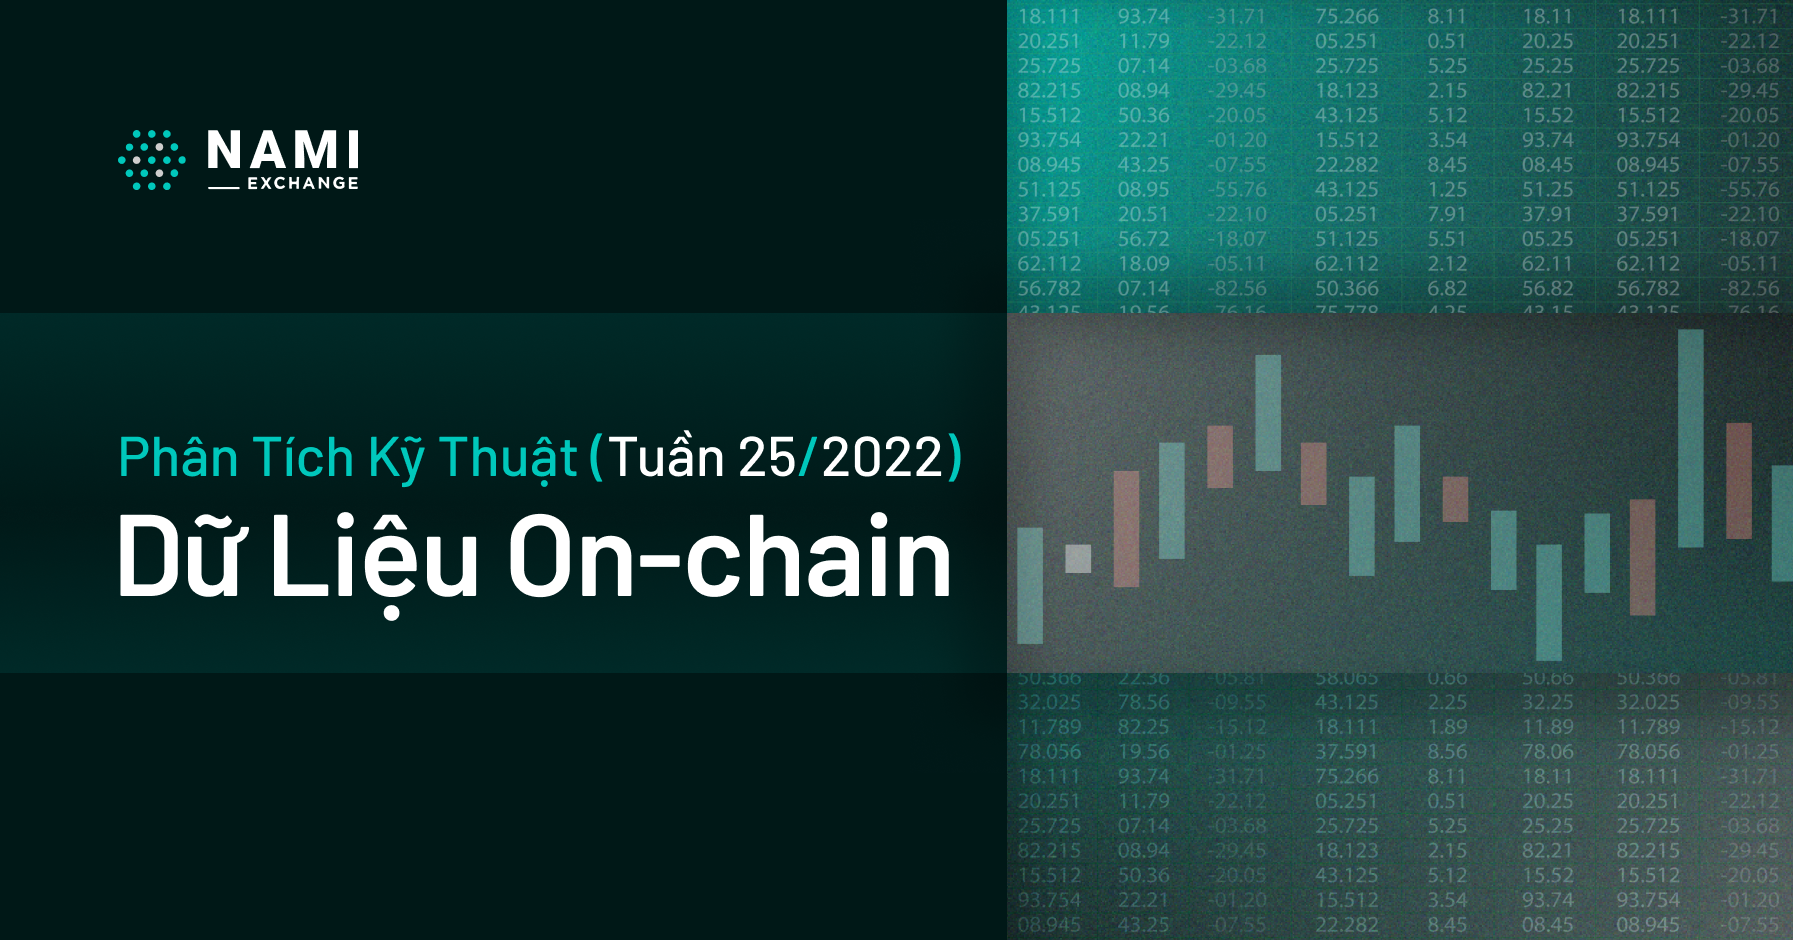 Phân tích dữ liệu On-chain (tuần 25/2022)